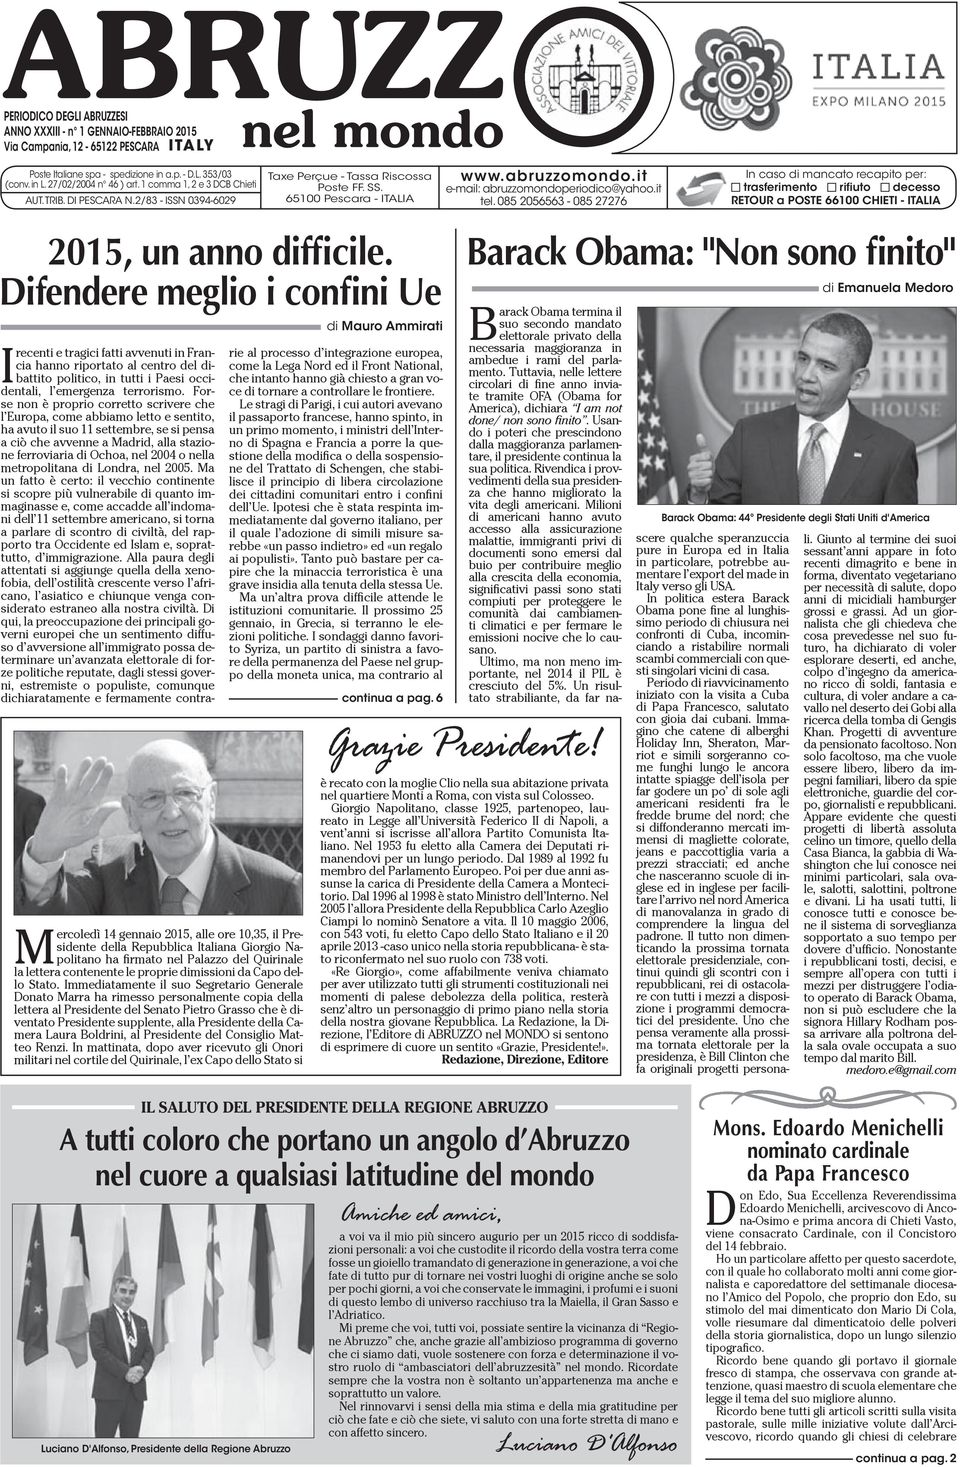 Difendere meglio i confini Ue Mercoledì 14 gennaio 2015, alle ore 10,35, il Presidente della Repubblica Italiana Giorgio Napolitano ha firmato nel Palazzo del Quirinale la lettera contenente le